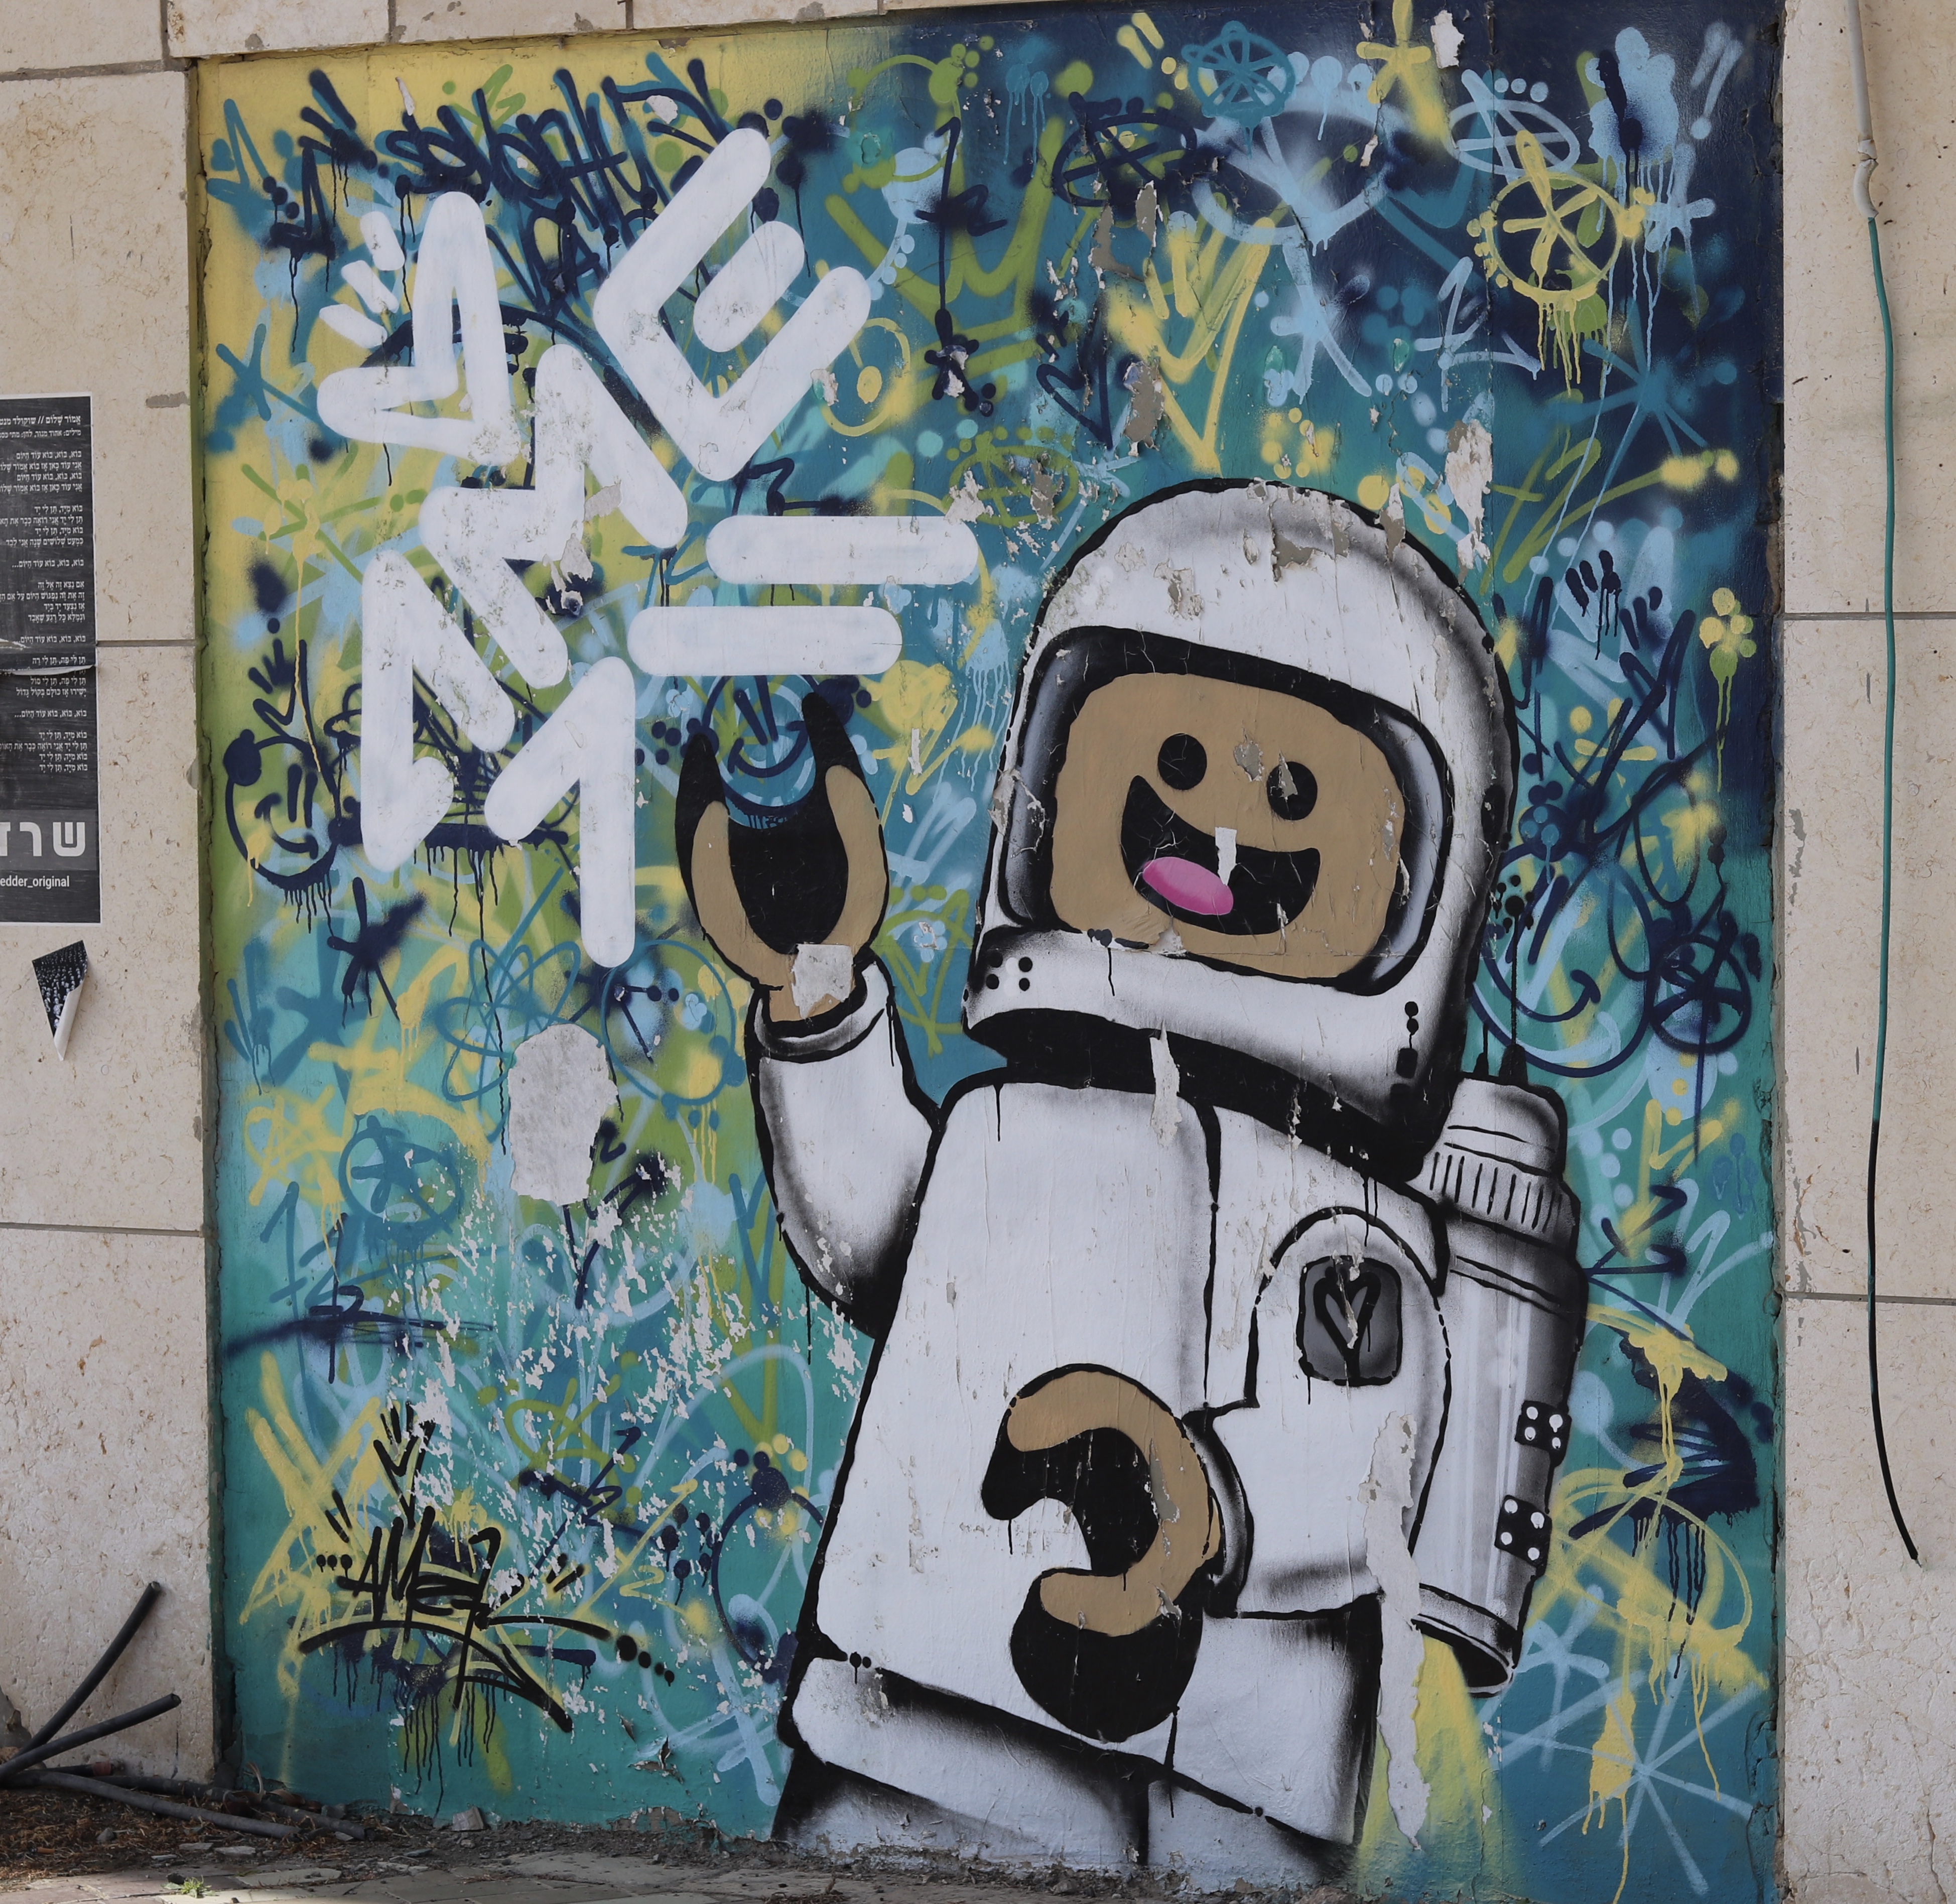 Lego themed Street art in Tel Aviv